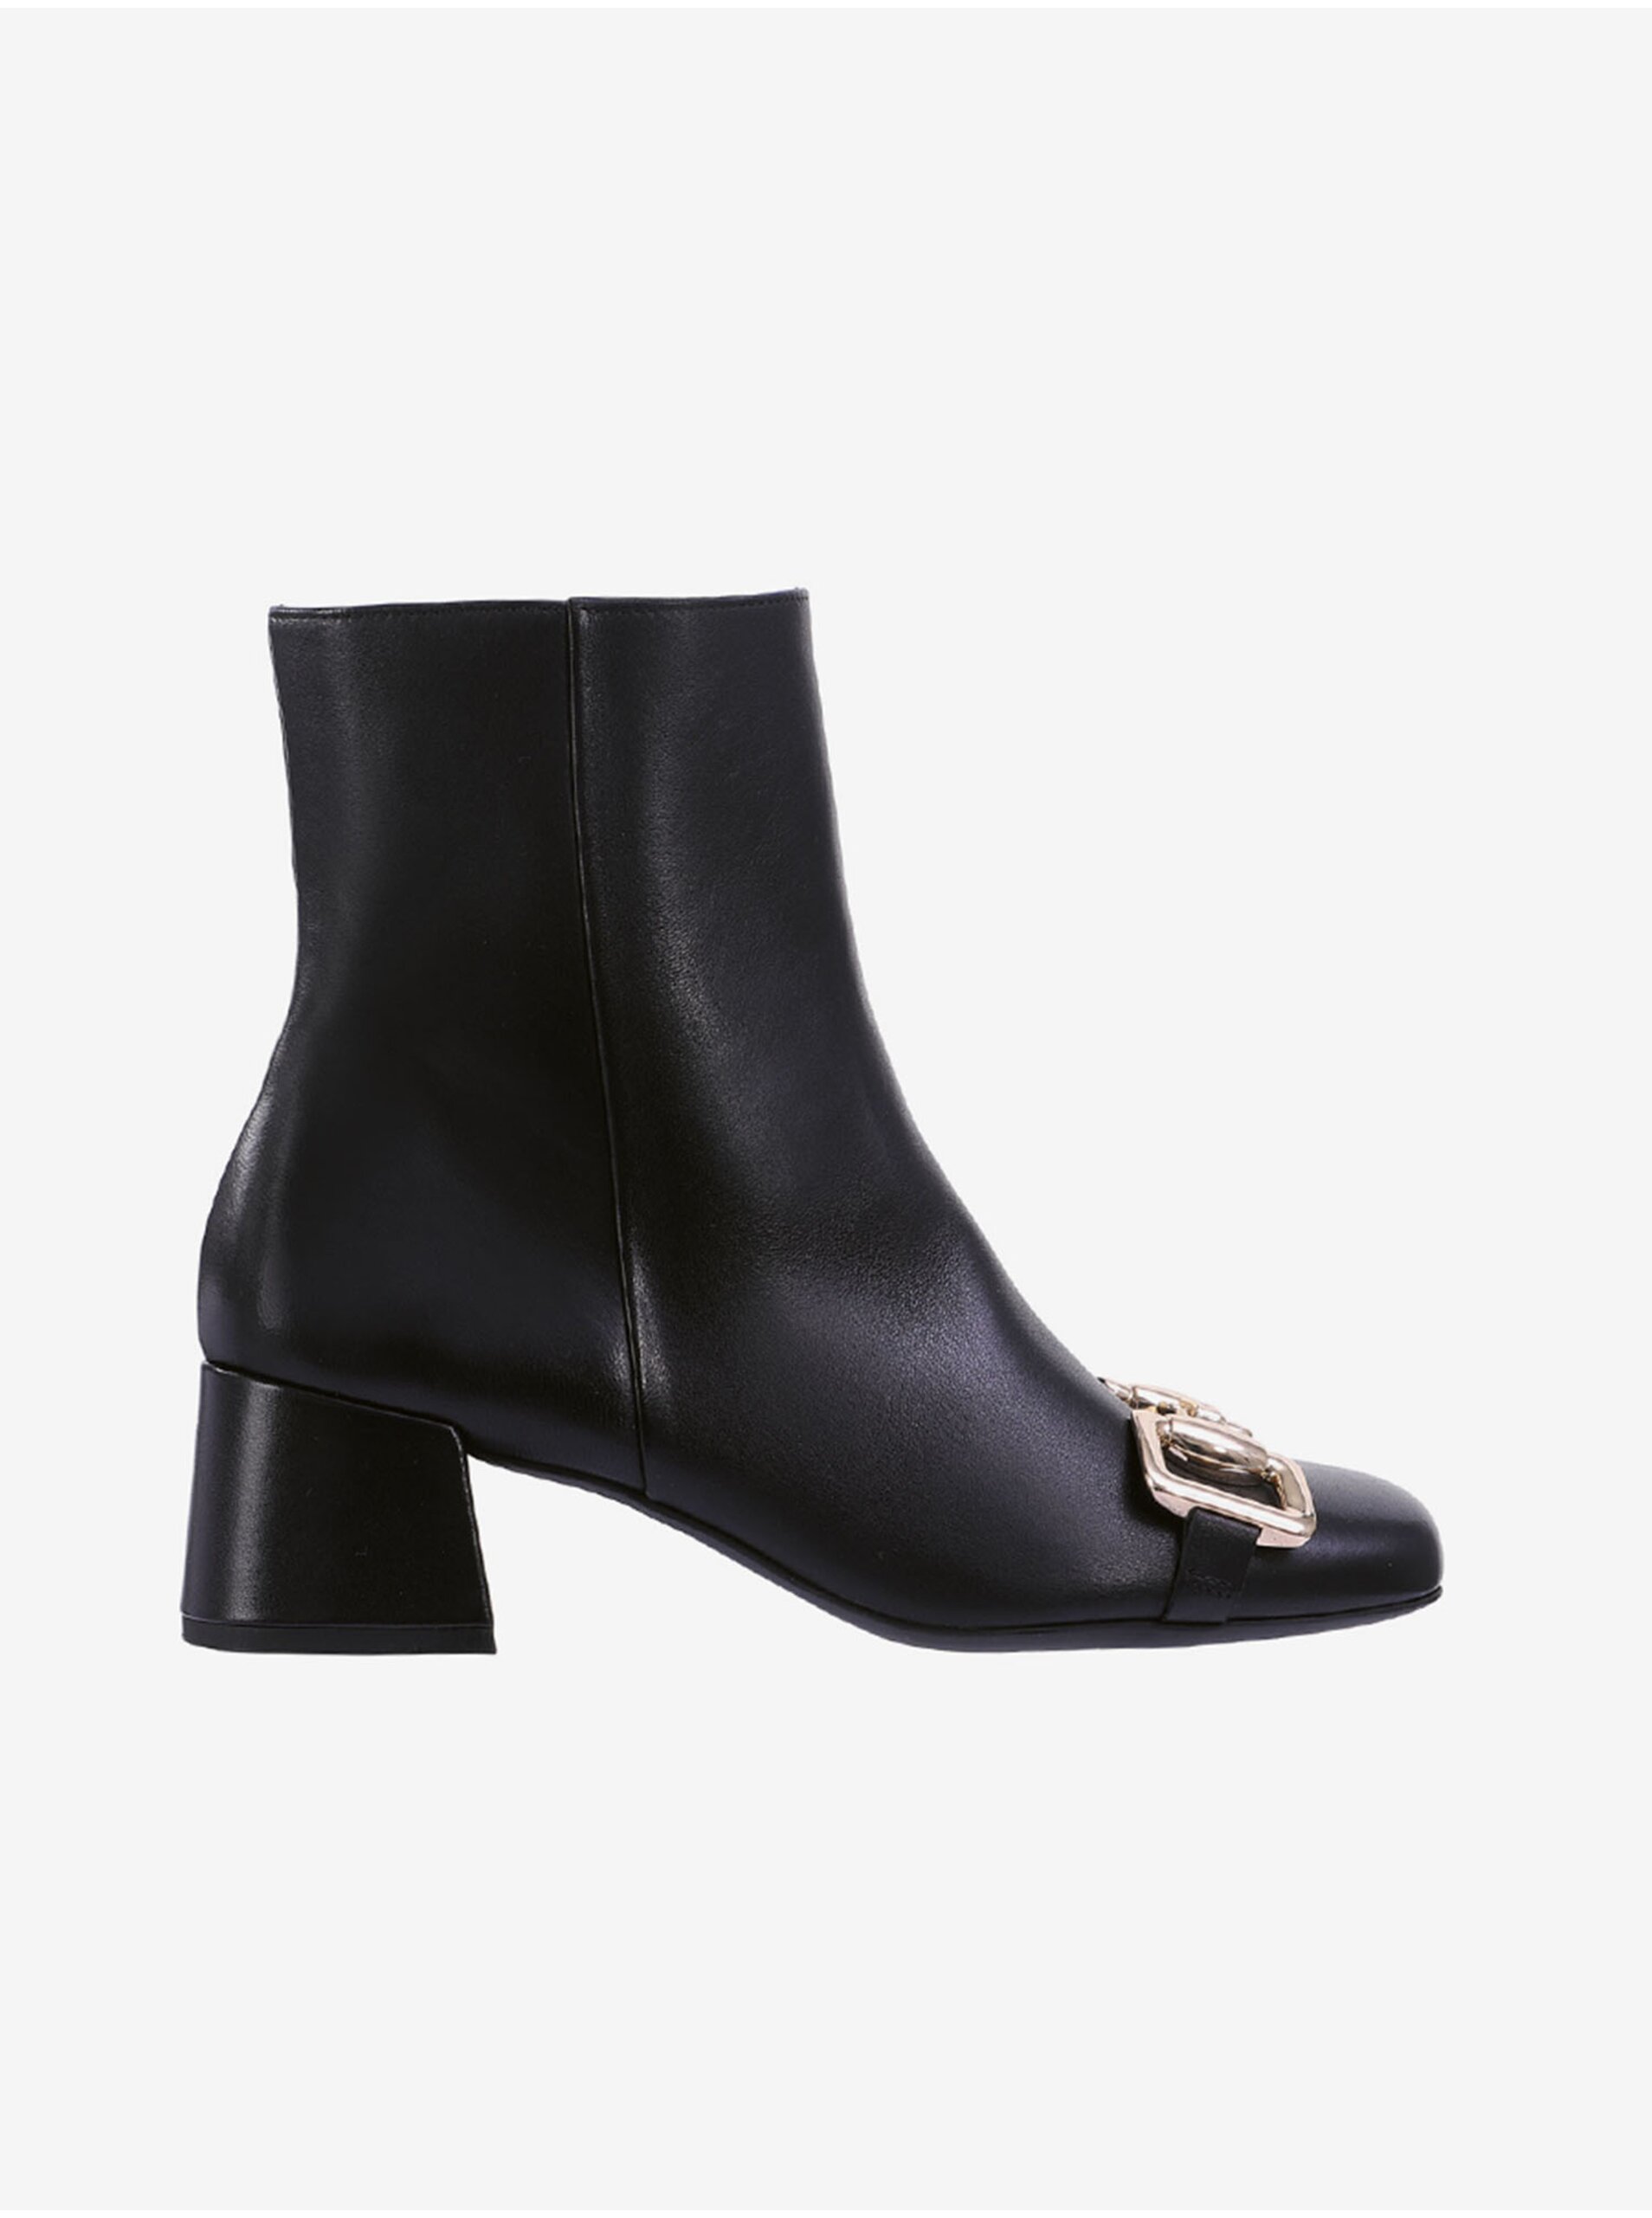 E-shop Černé dámské kožené kotníkové boty na podpatku Högl Sophie